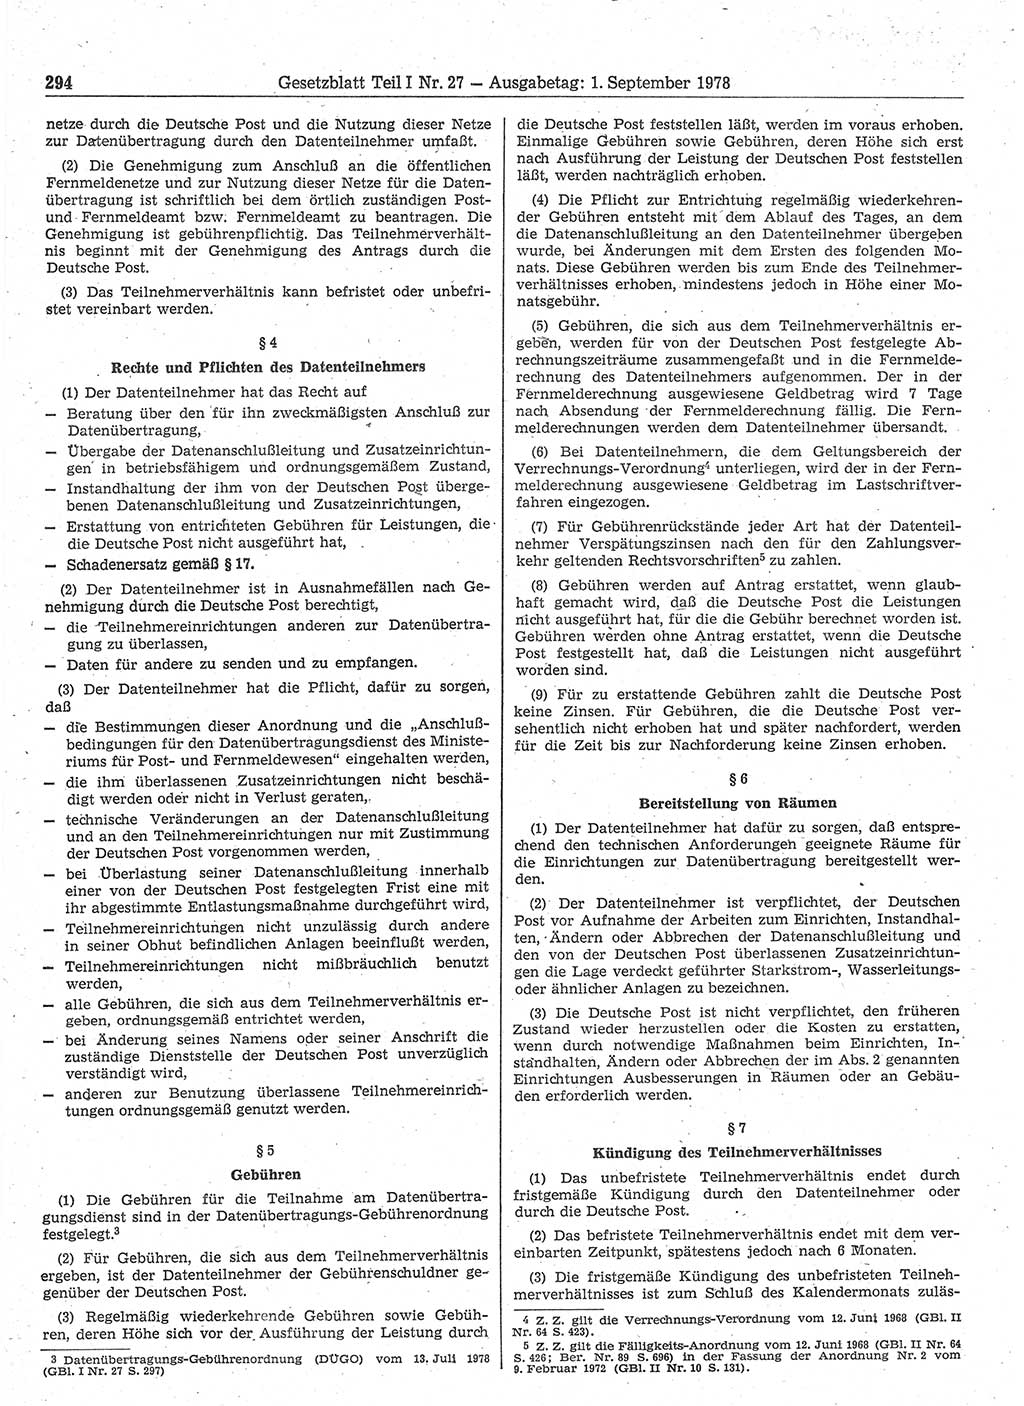 Gesetzblatt (GBl.) der Deutschen Demokratischen Republik (DDR) Teil Ⅰ 1978, Seite 294 (GBl. DDR Ⅰ 1978, S. 294)